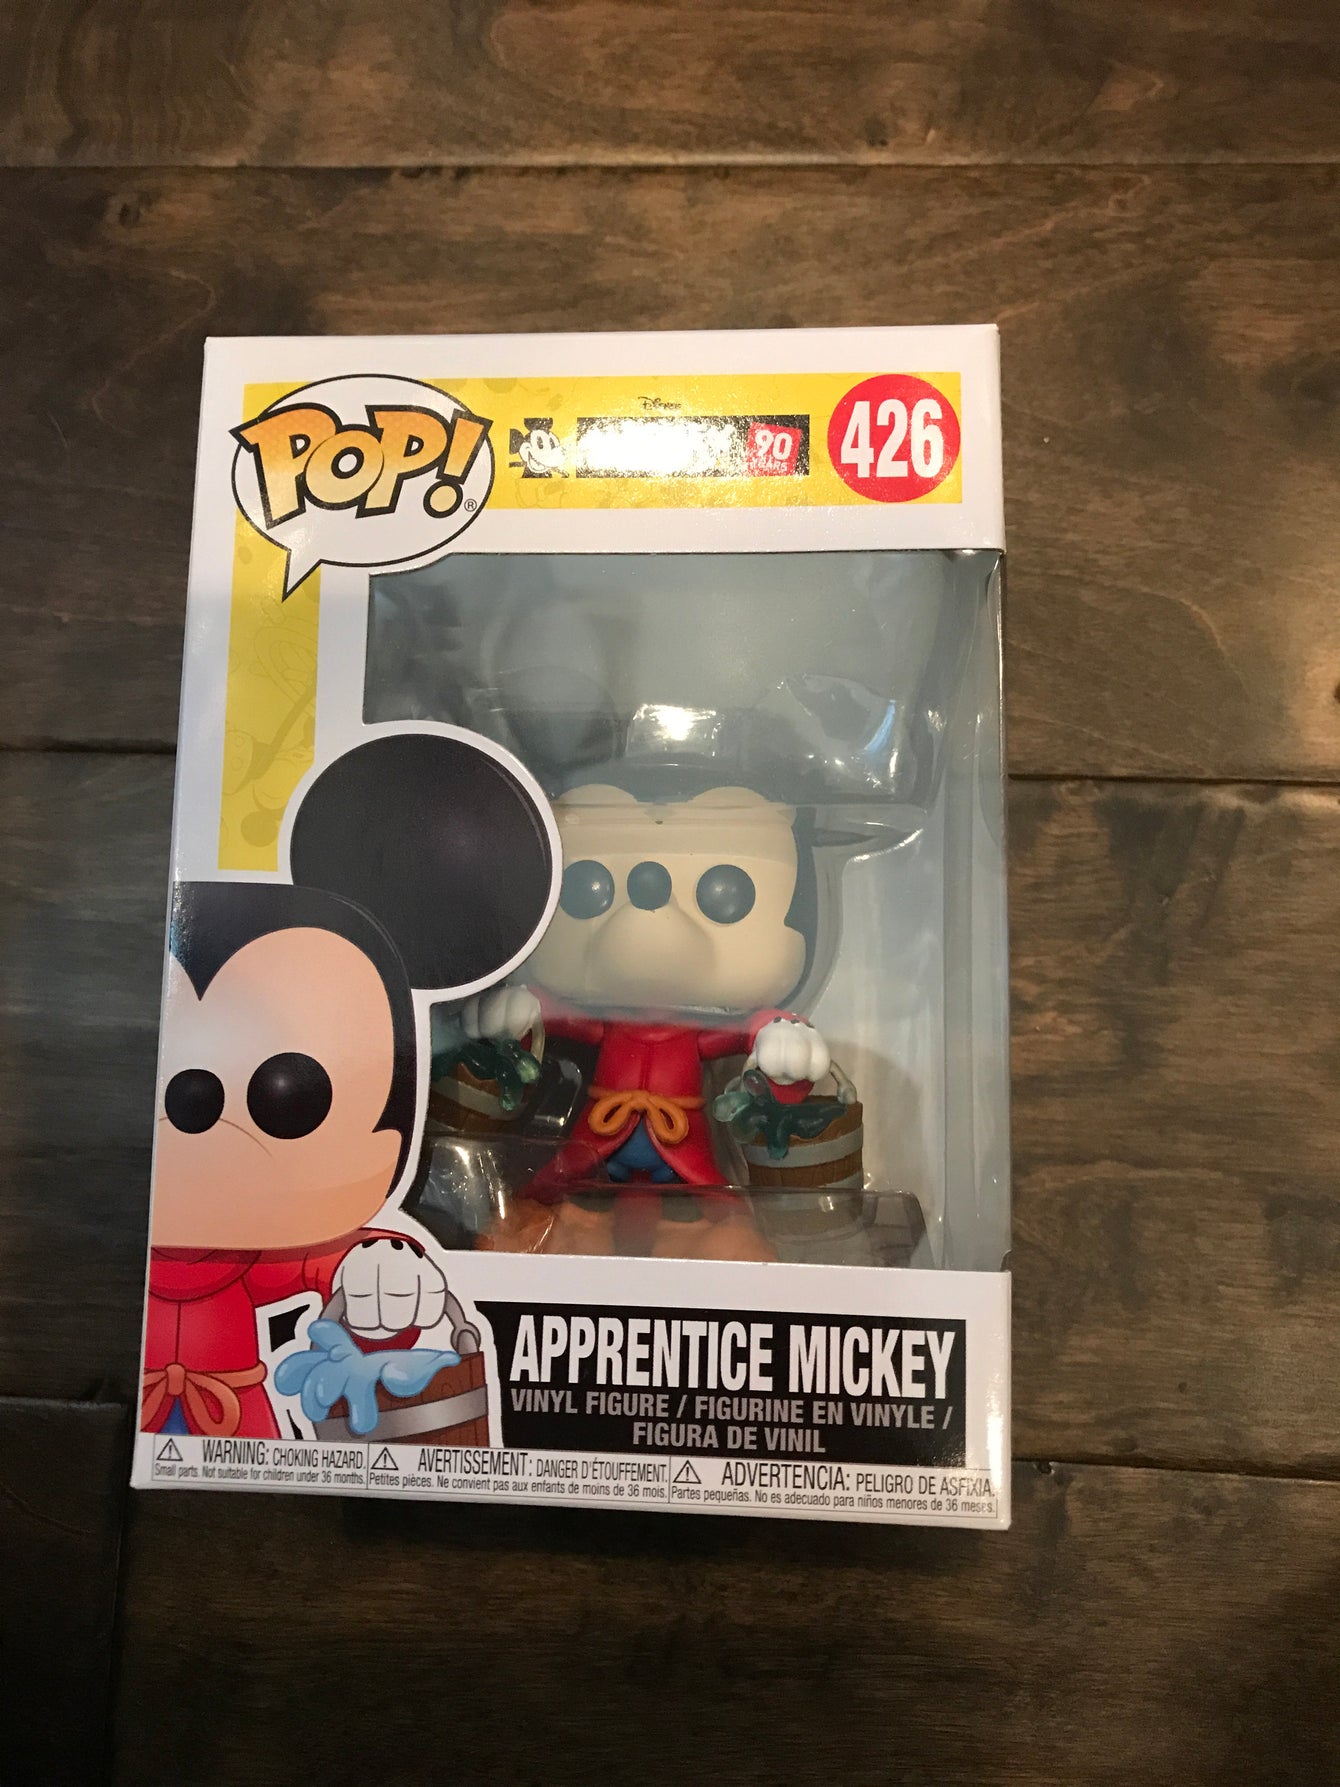 Apprentice Mickey mint condition LC4